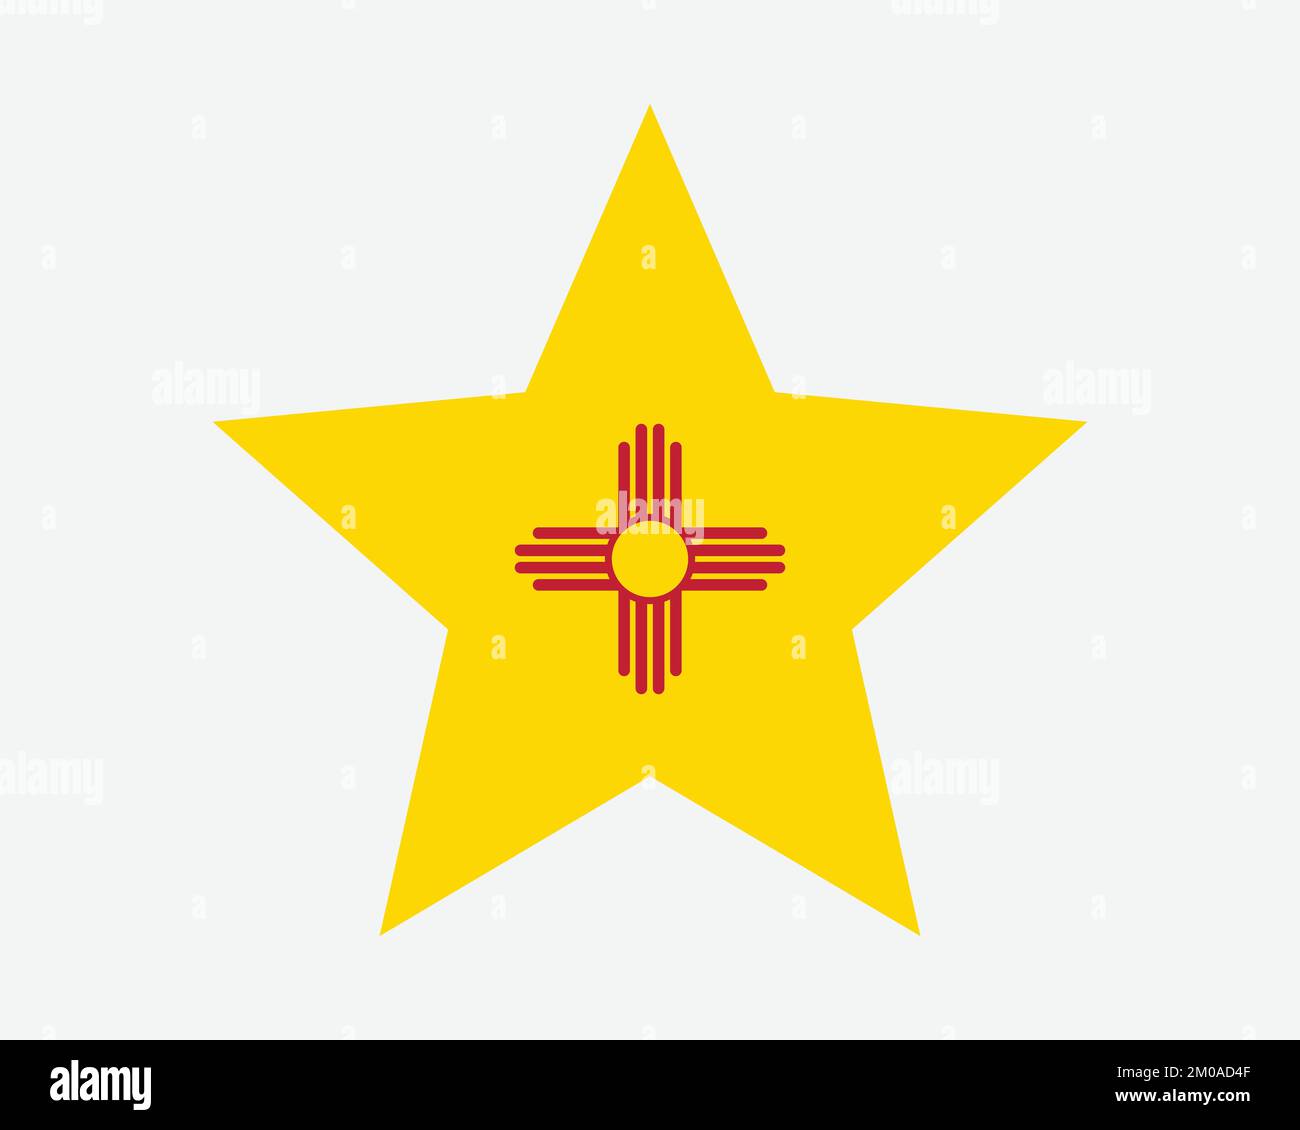 Bandiera a stella del New Mexico. BANDIERA di stato a forma di stella A CINQUE punti DEGLI STATI UNITI D'AMERICA. Illustrazione grafica dell'icona del nuovo banner americano messicano simbolo vettoriale piatto Illustrazione Vettoriale